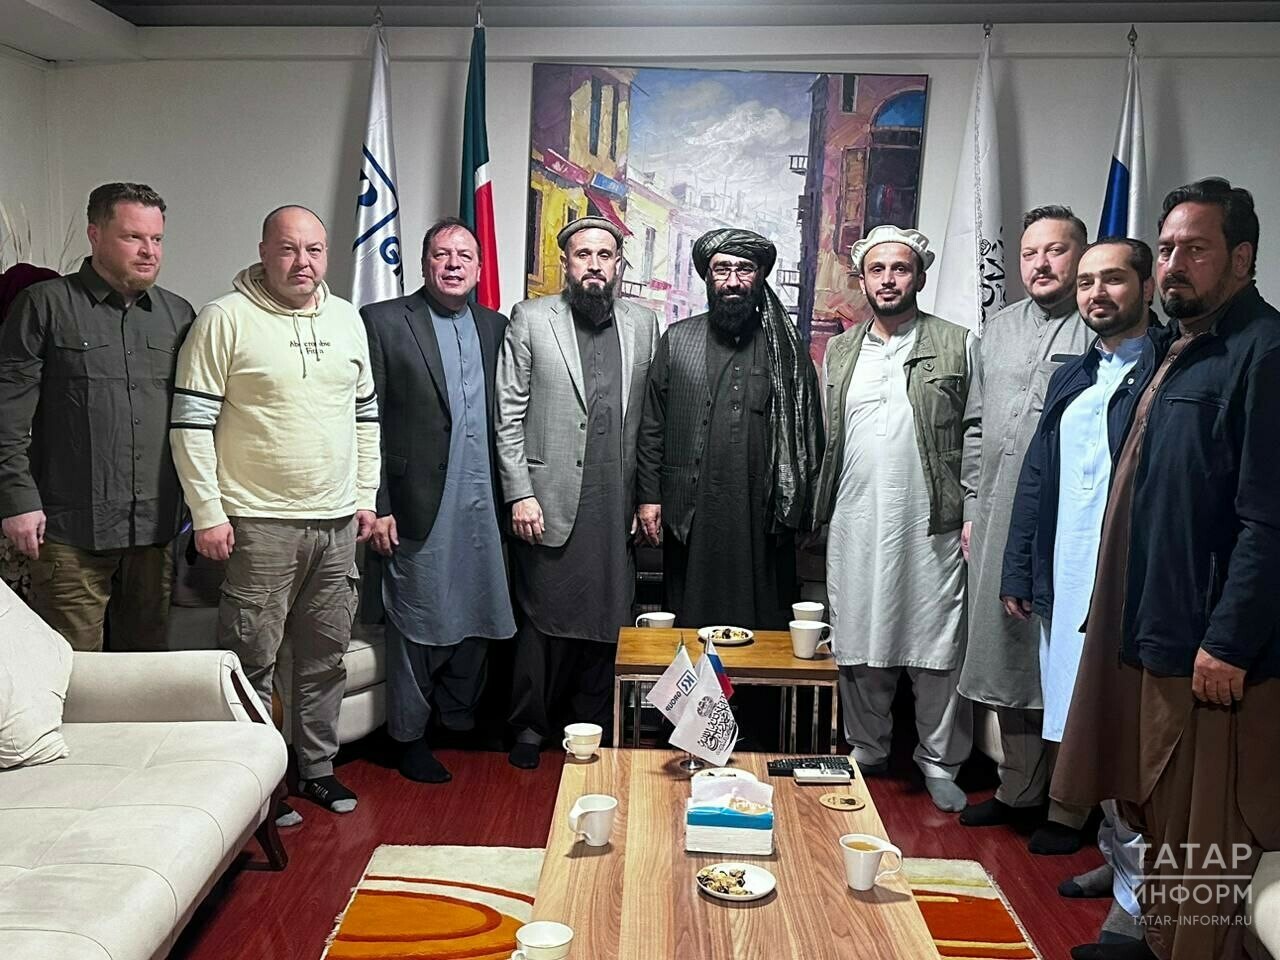 Кабулда Әфганстан хөкүмәт делегациясенең Казанга булачак визиты турында фикер алыштылар